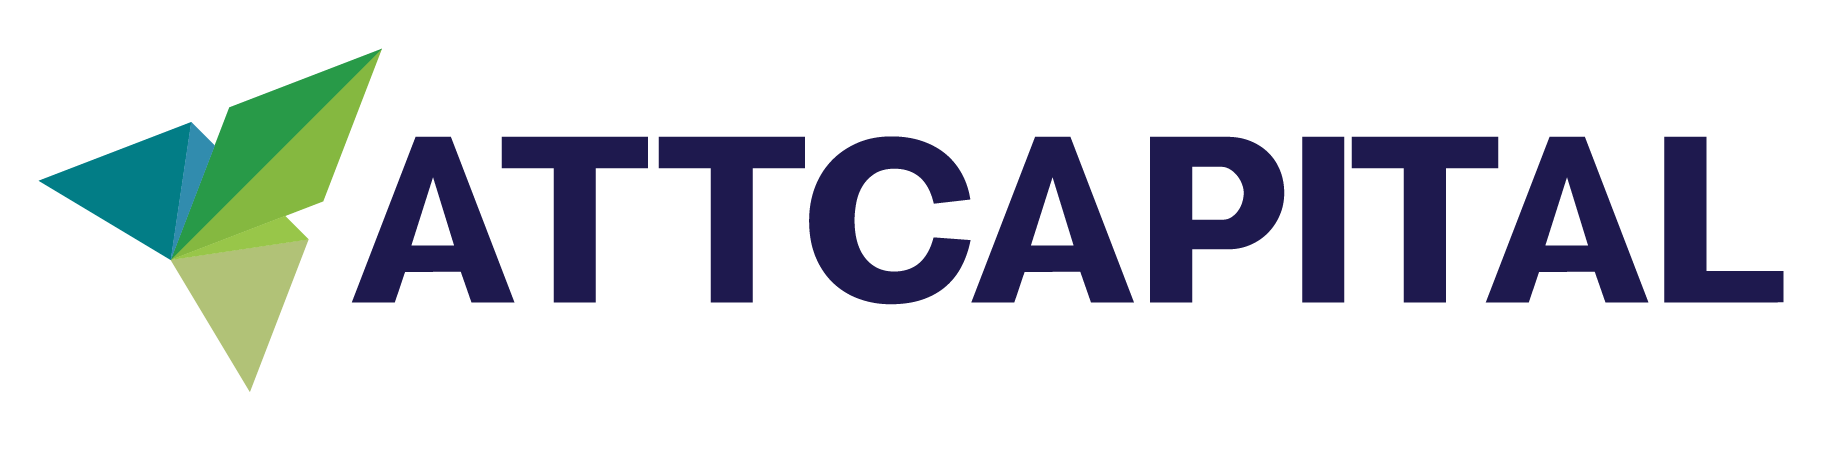 AttCaptial logo